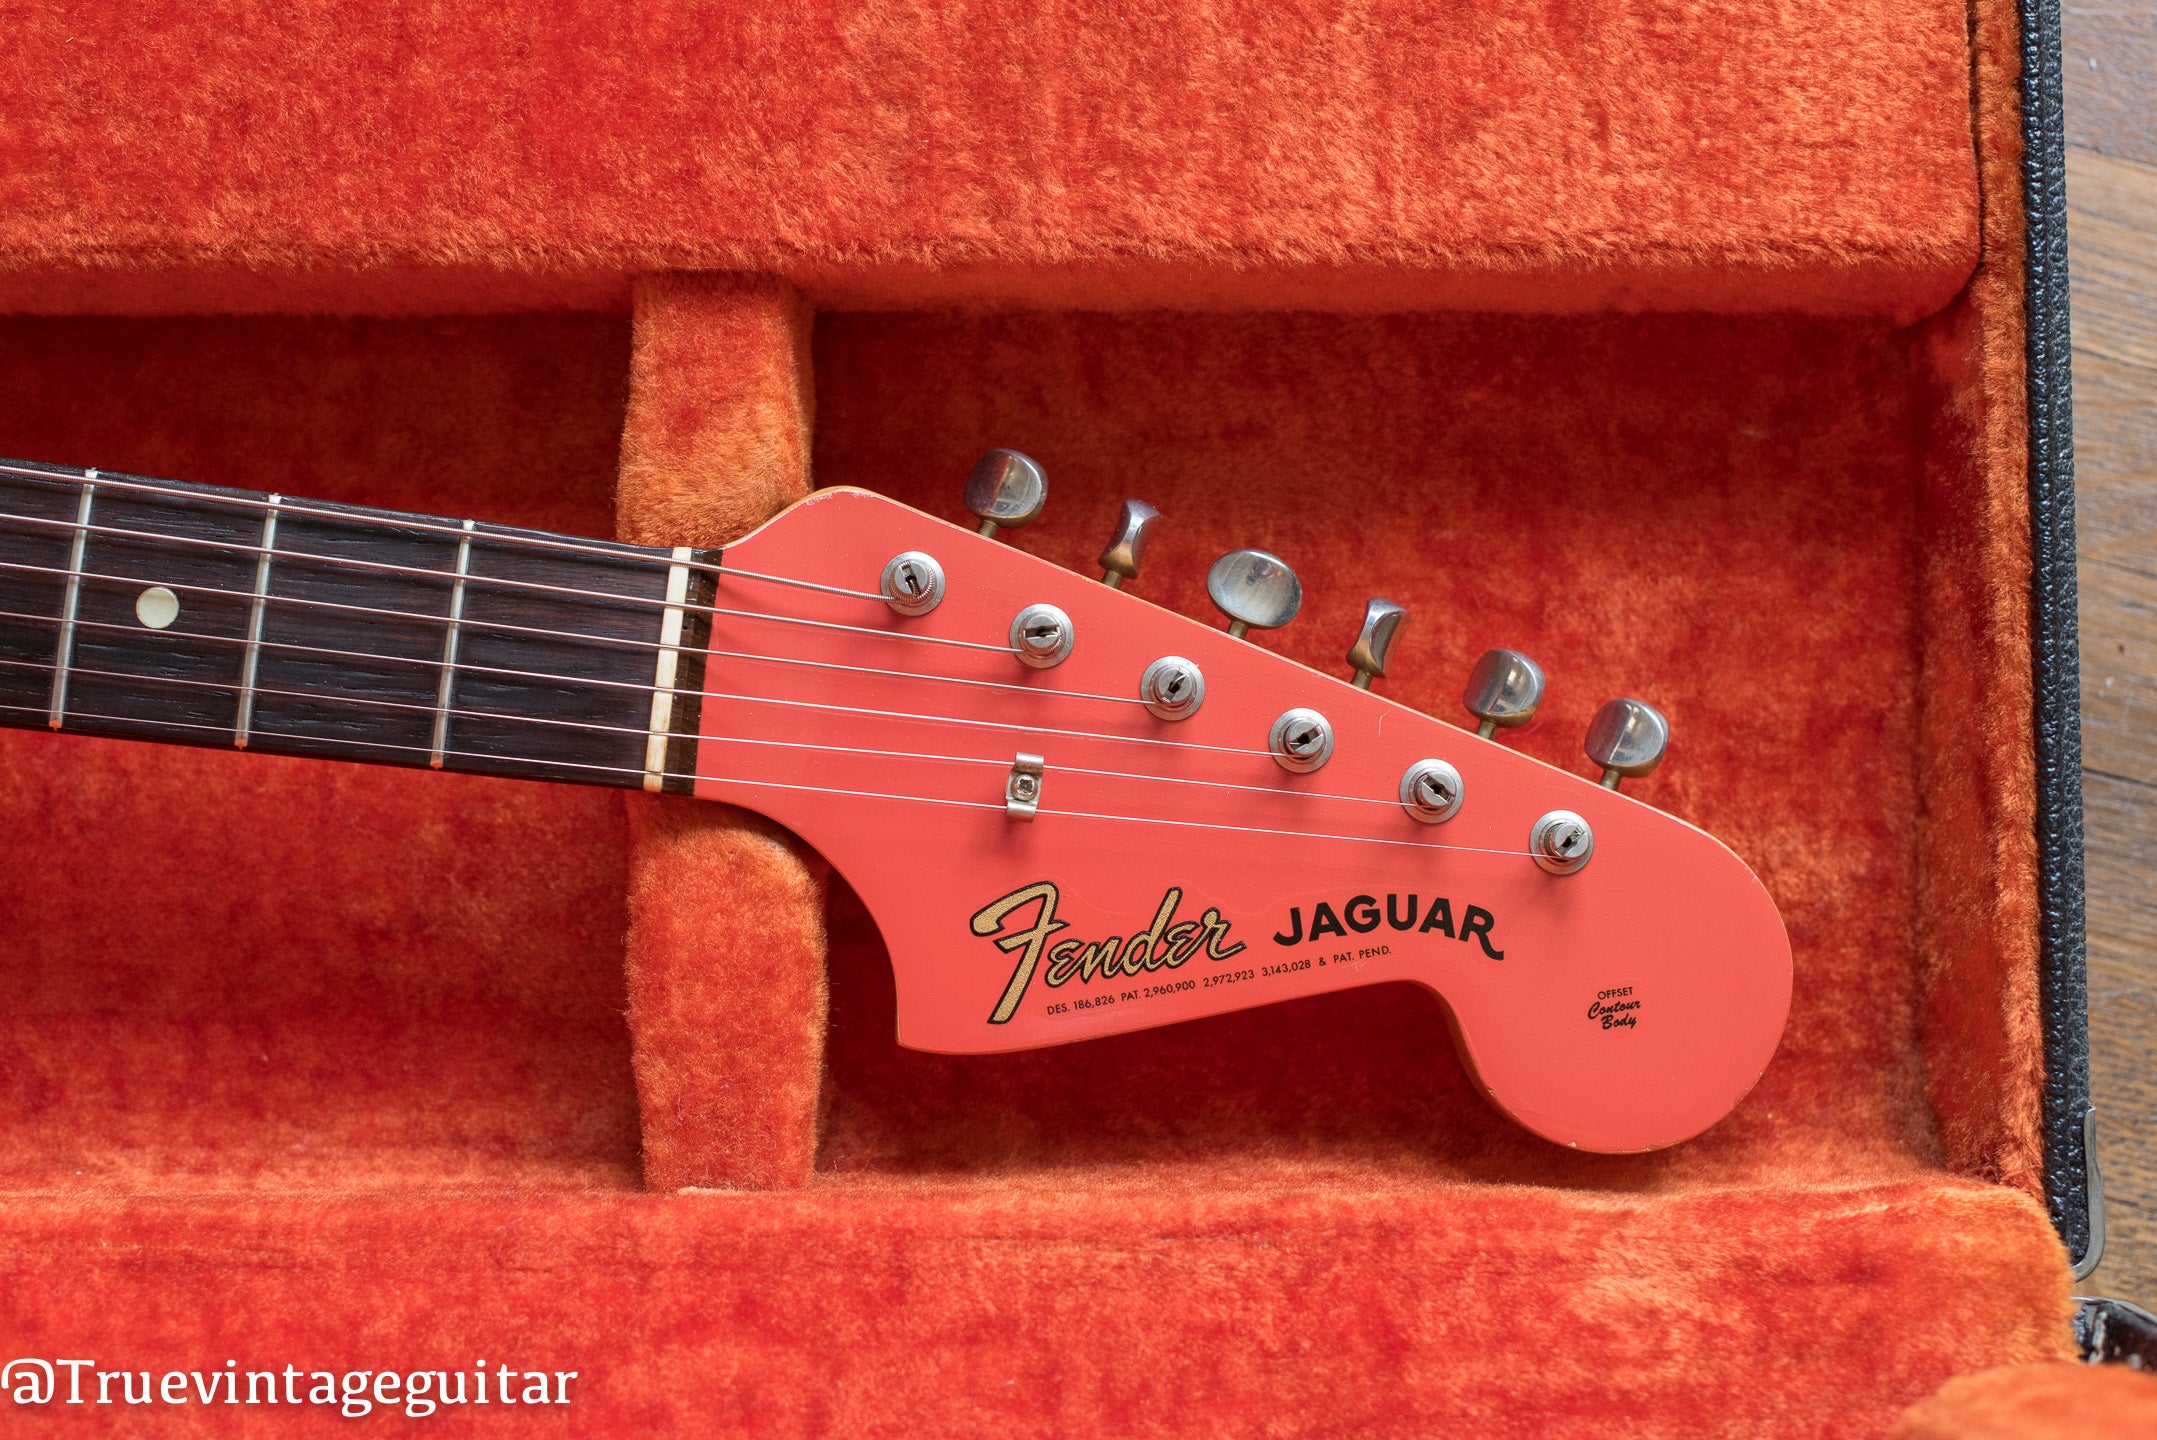 Vintage 1965 Fender Jaguar Fiesta Red headstock electric guitar